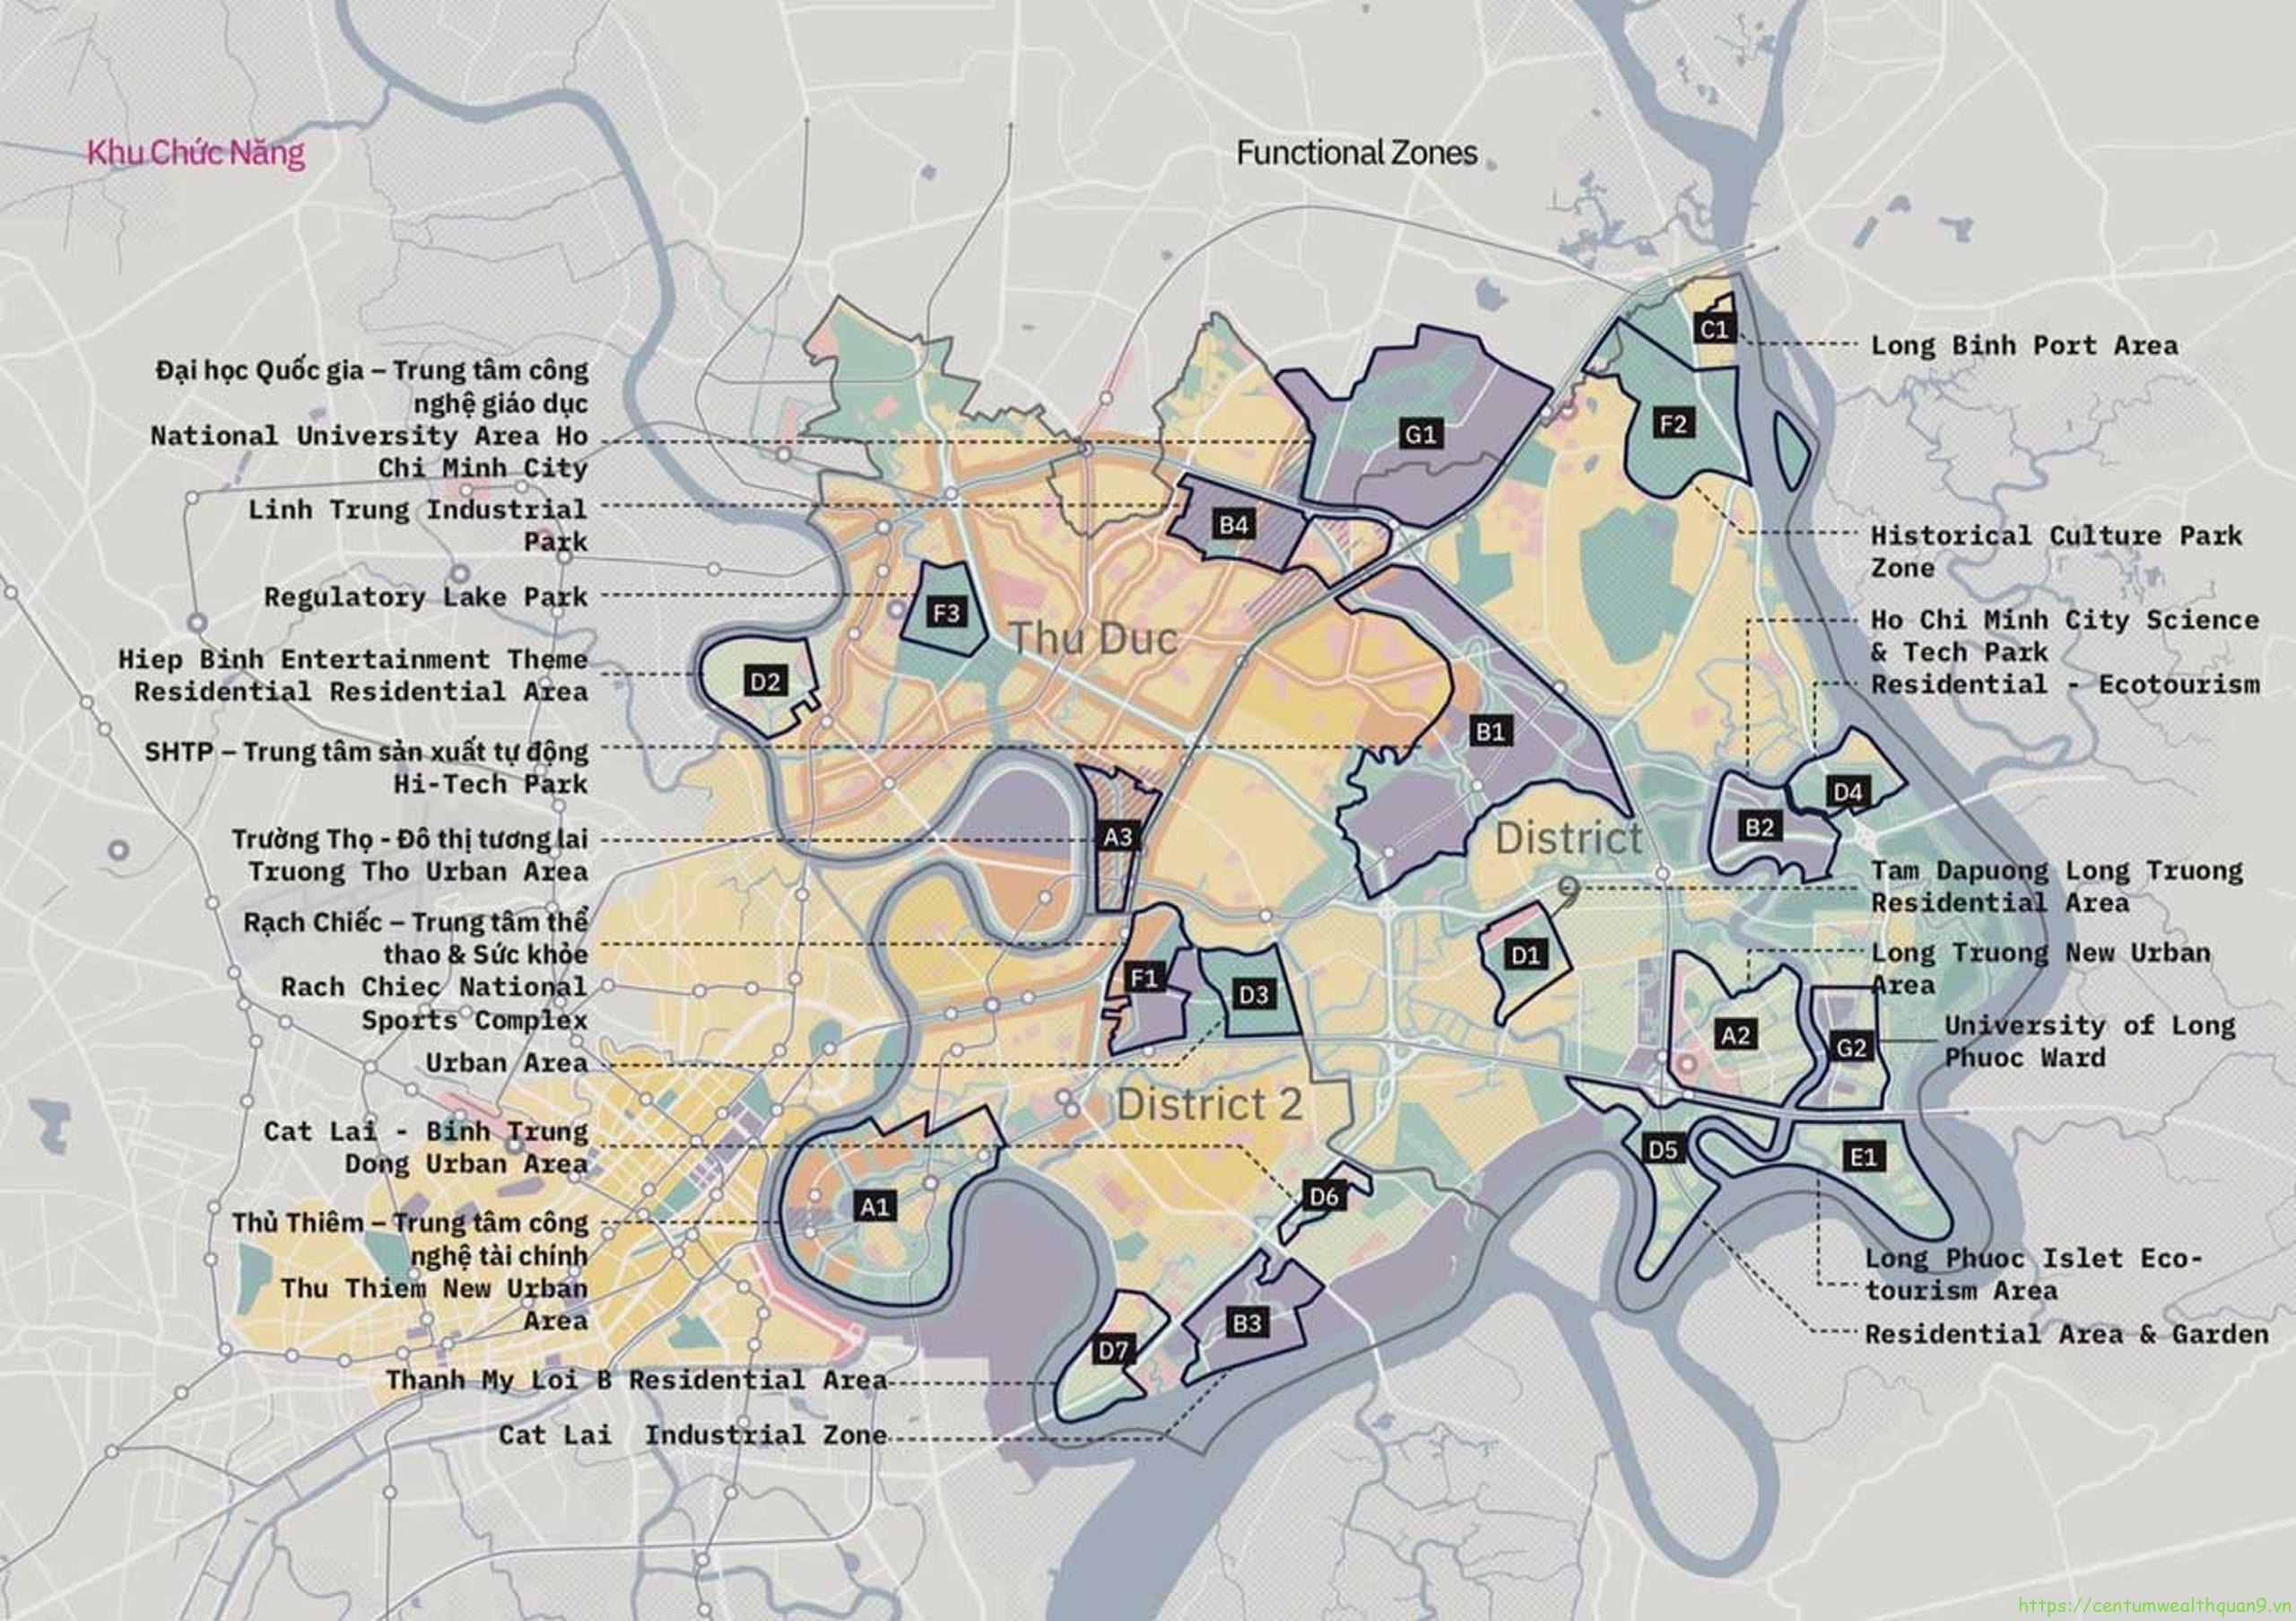 Thông tin quy hoạch đến năm 2040 sẽ làm bạn bất ngờ! Thành phố Thủ Đức đang chuẩn bị các kế hoạch phát triển để trở thành một trong những khu vực phát triển nhanh nhất của Việt Nam. Đừng bỏ lỡ cơ hội xem ảnh liên quan và cập nhật những thông tin quan trọng nhất về quy hoạch Thủ Đức.